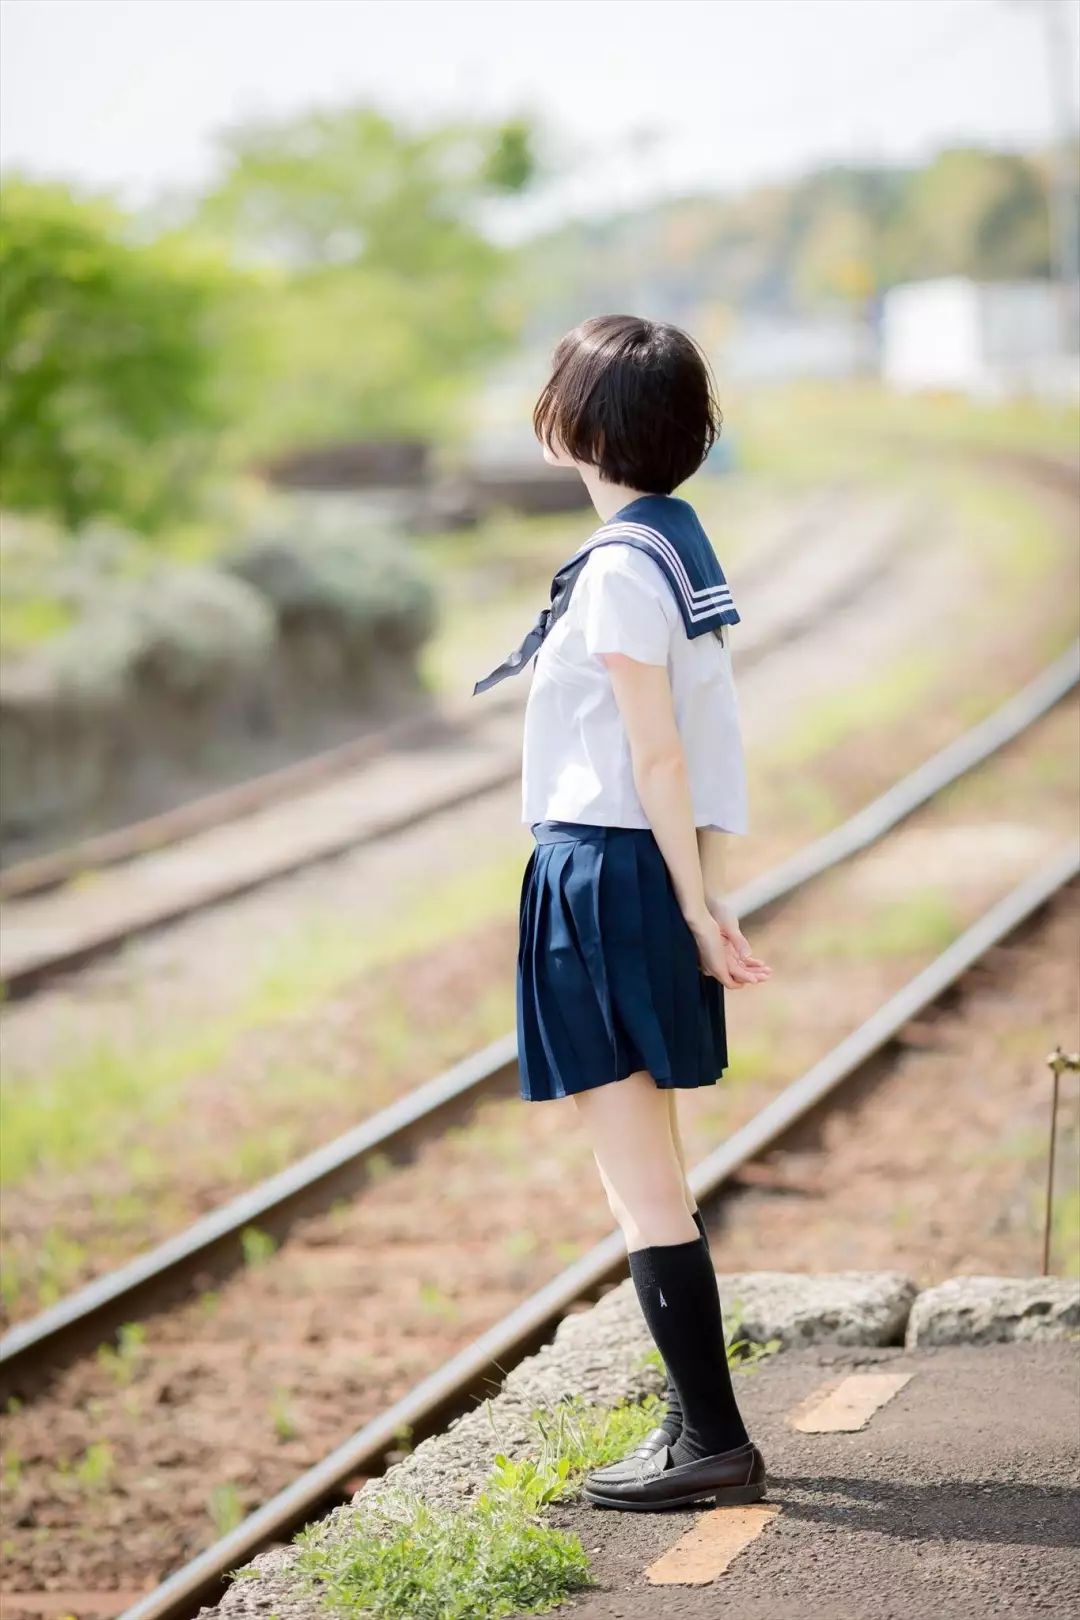 又美又甜,日本少女制服大盘点这就是青春啊!